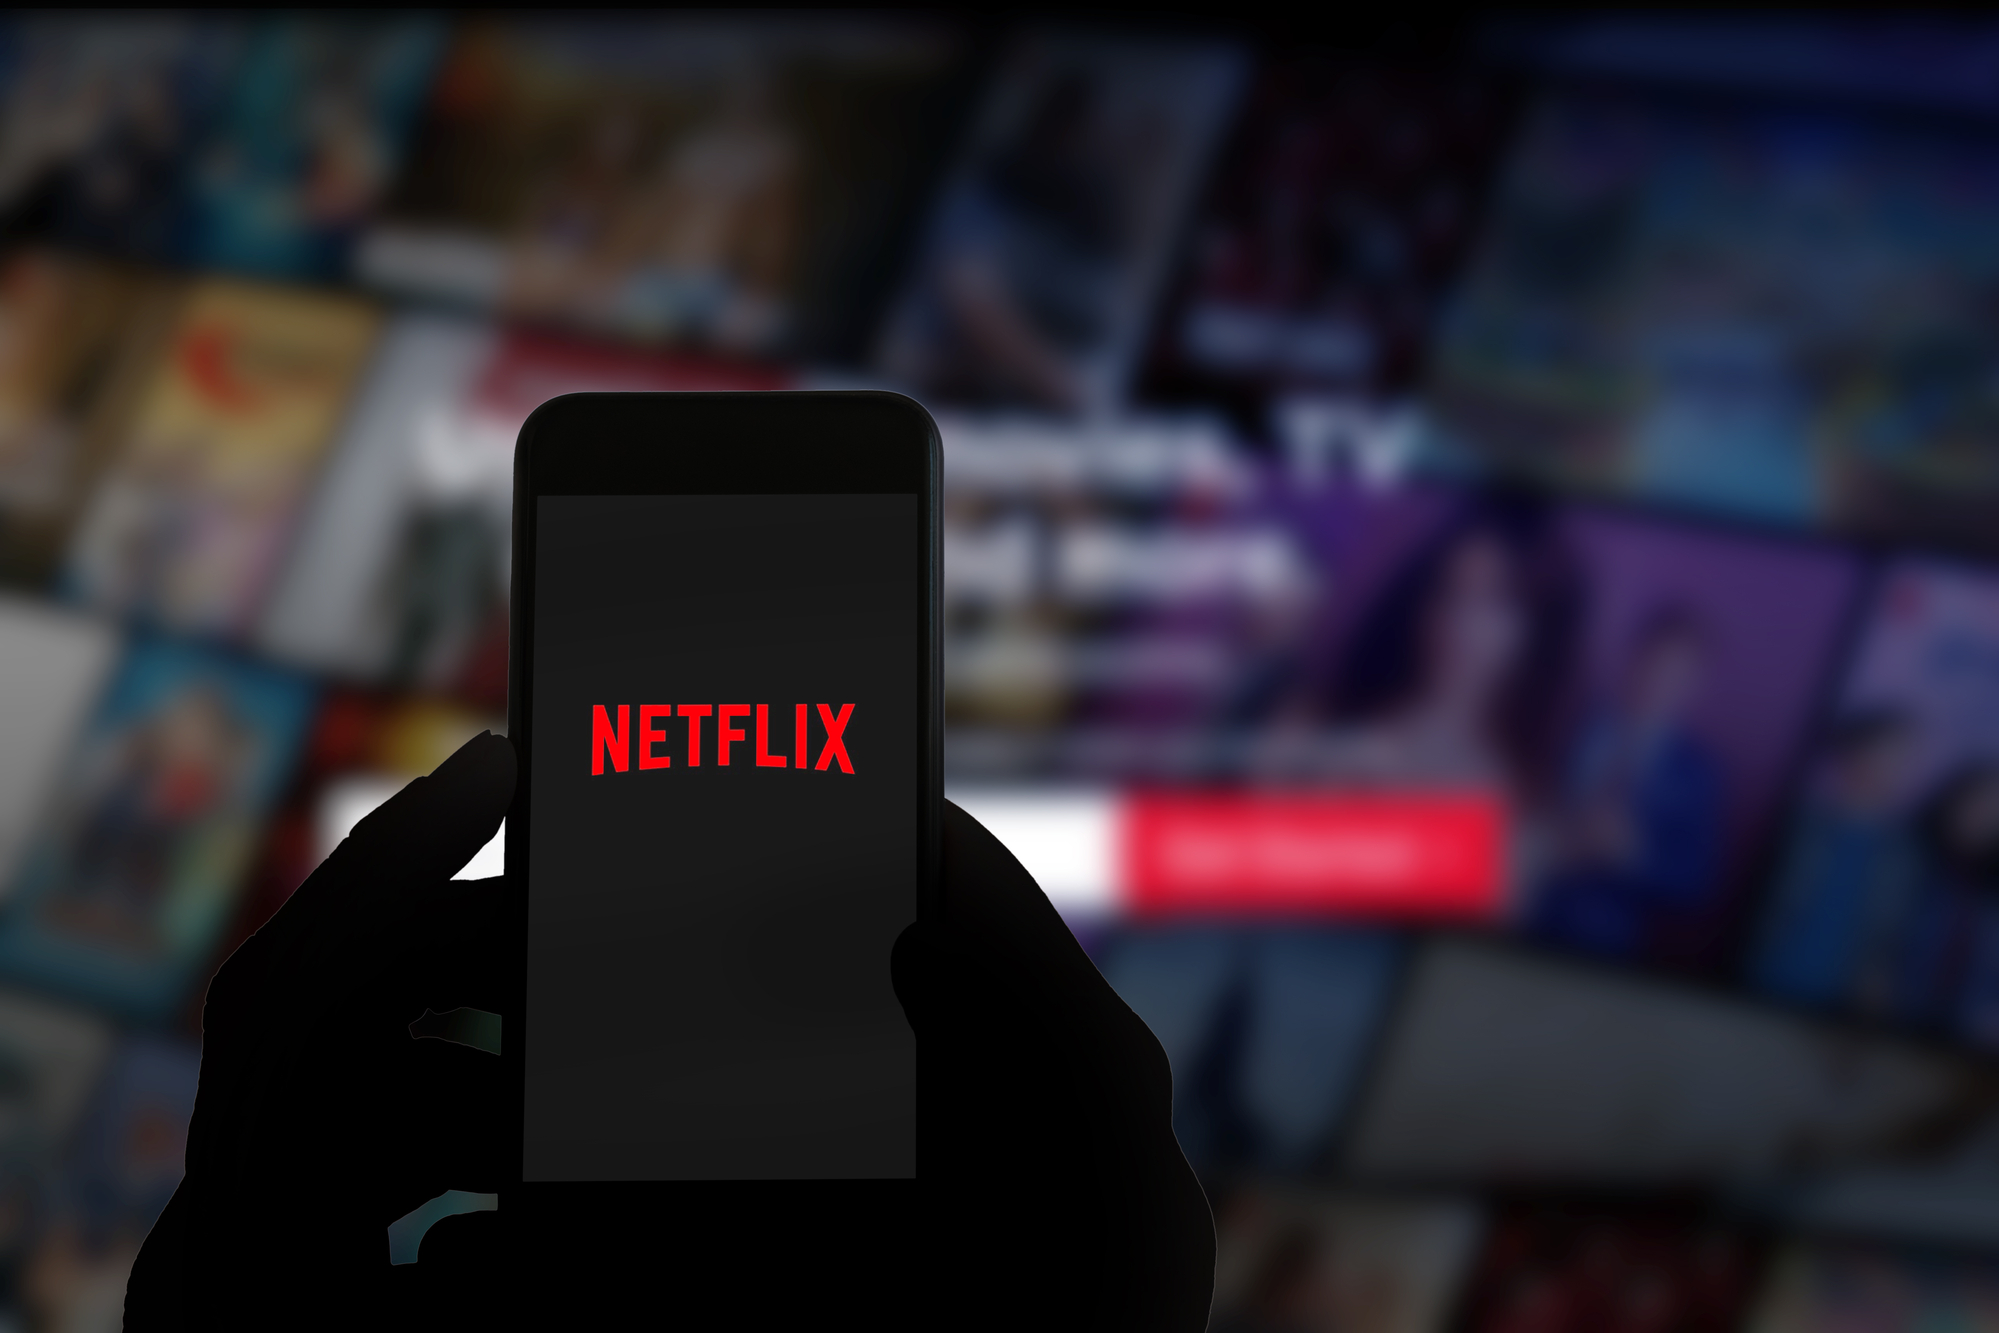 Logo und Website von Netflix auf dem Display eines Mobiltelefons